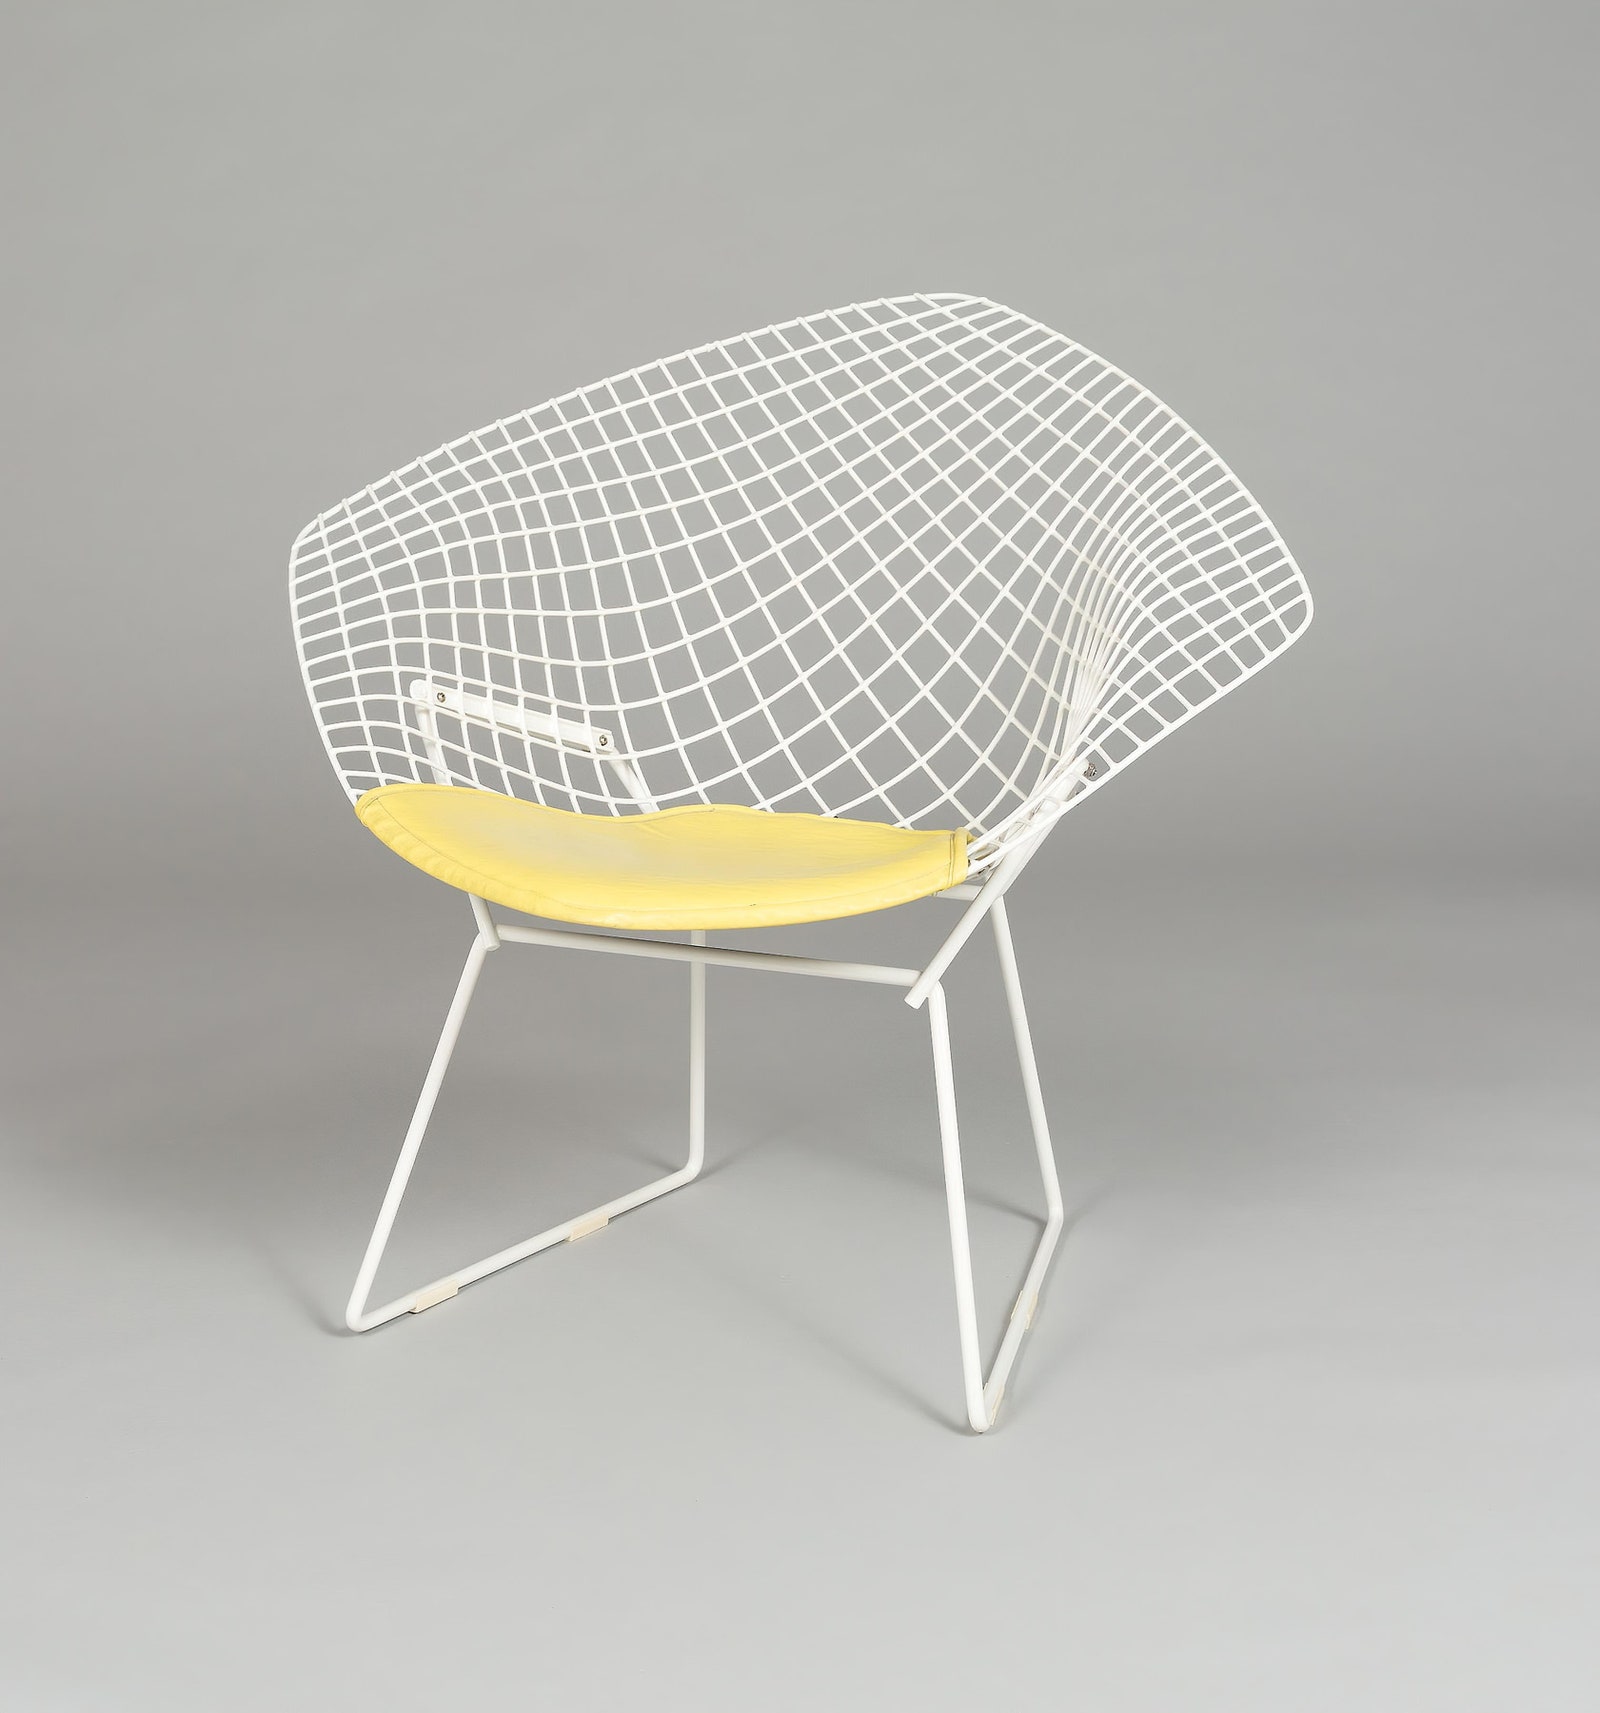 Гарри Бертойя . Кресло Knoll 1967. Размеры 774 × 858 × 711 см. Белая виниловая стальная сетка.